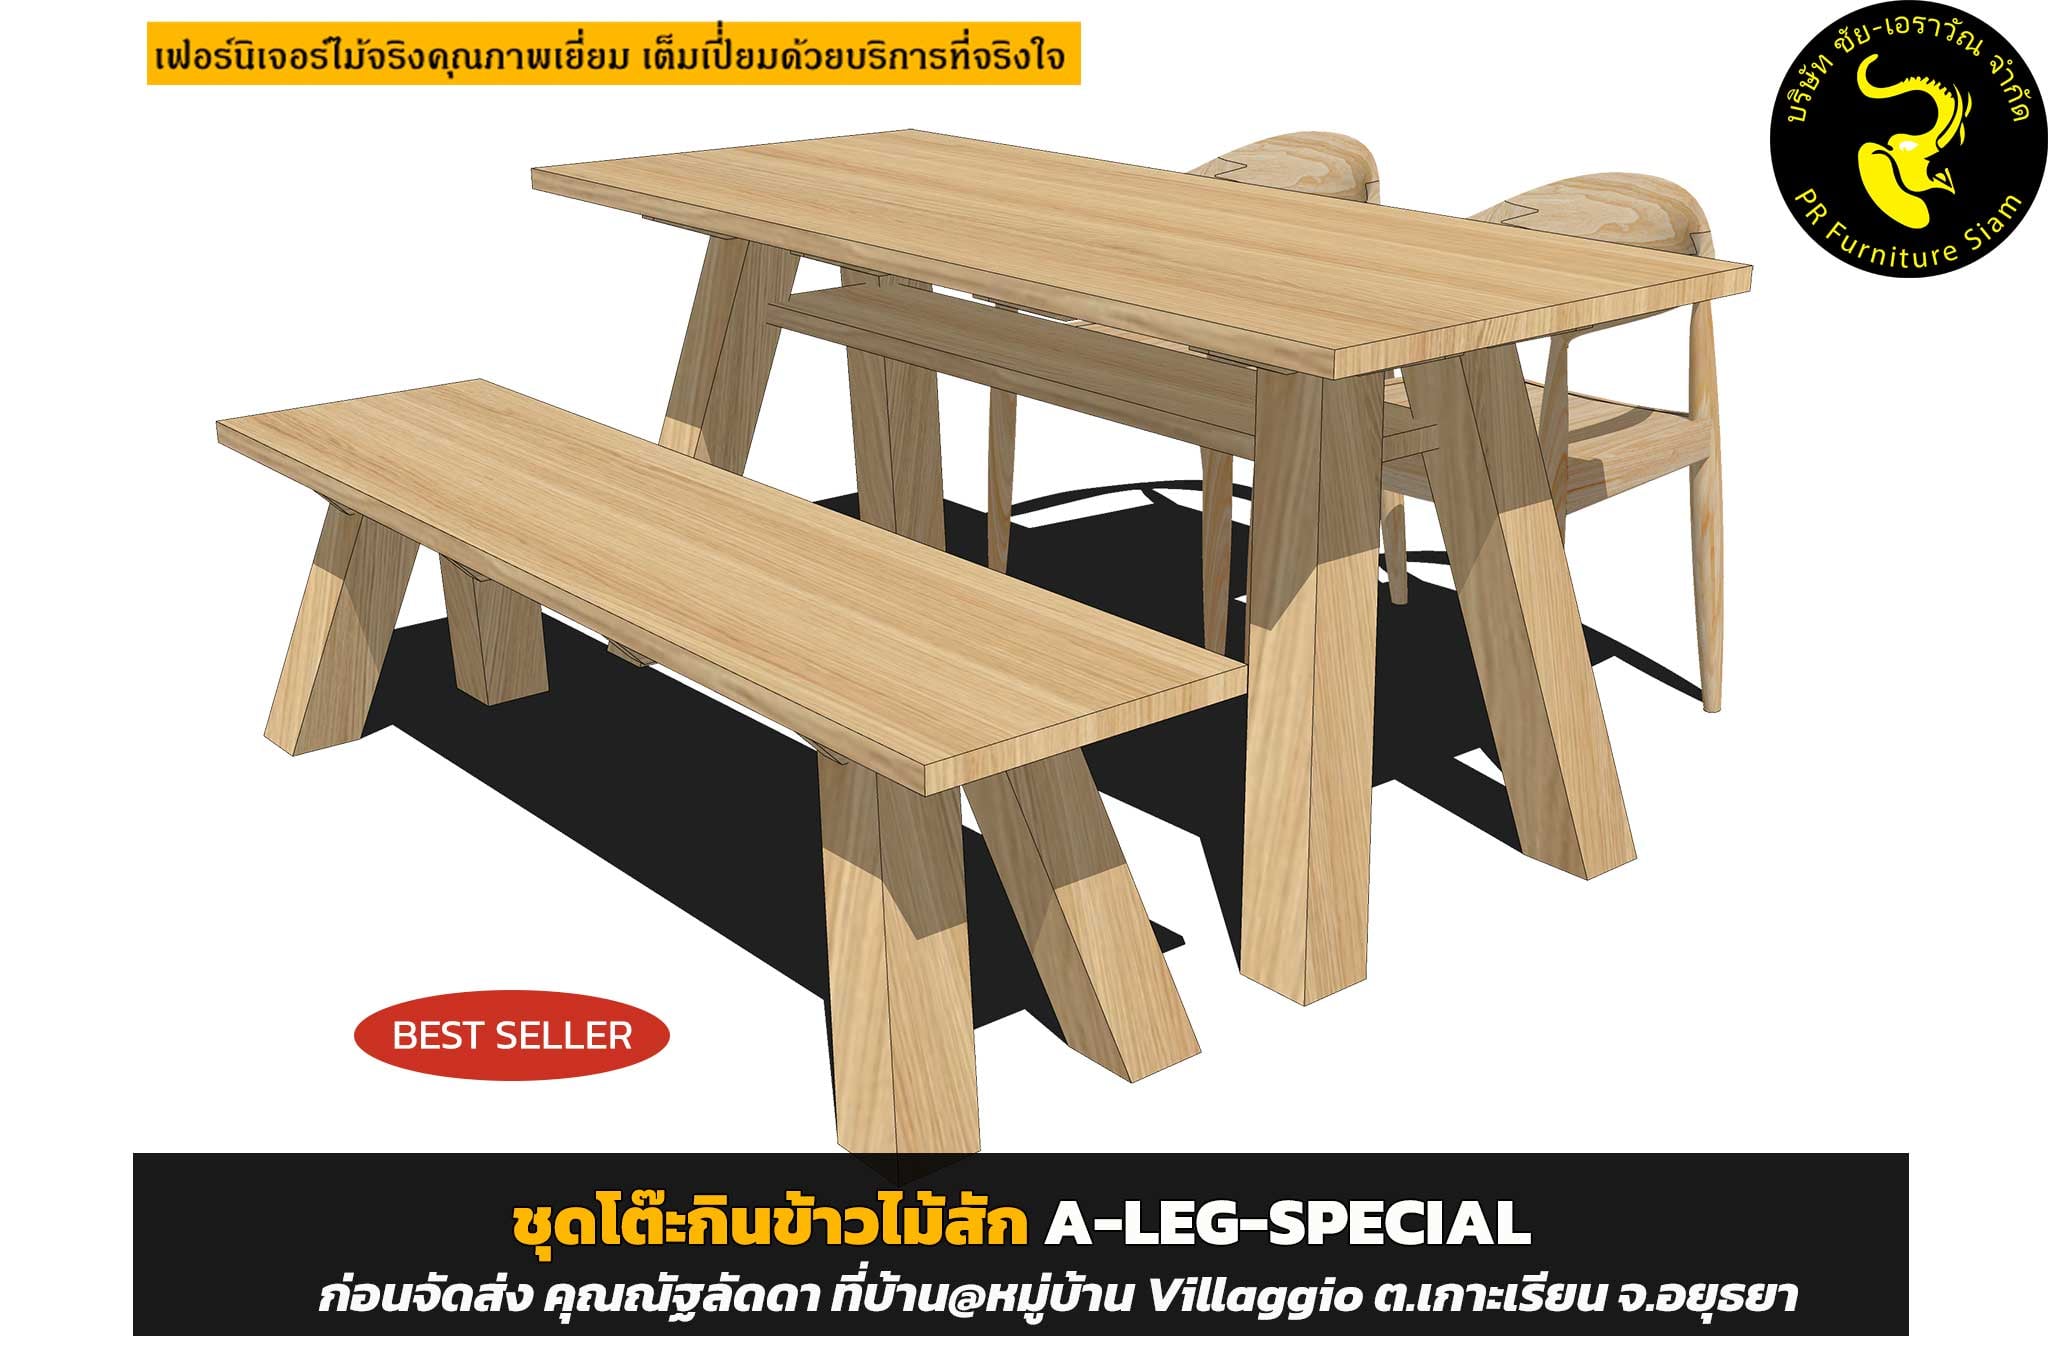 ชุดโต๊ะกินข้าวไม้สัก 4 ที่นั่ง A-LEG-Special